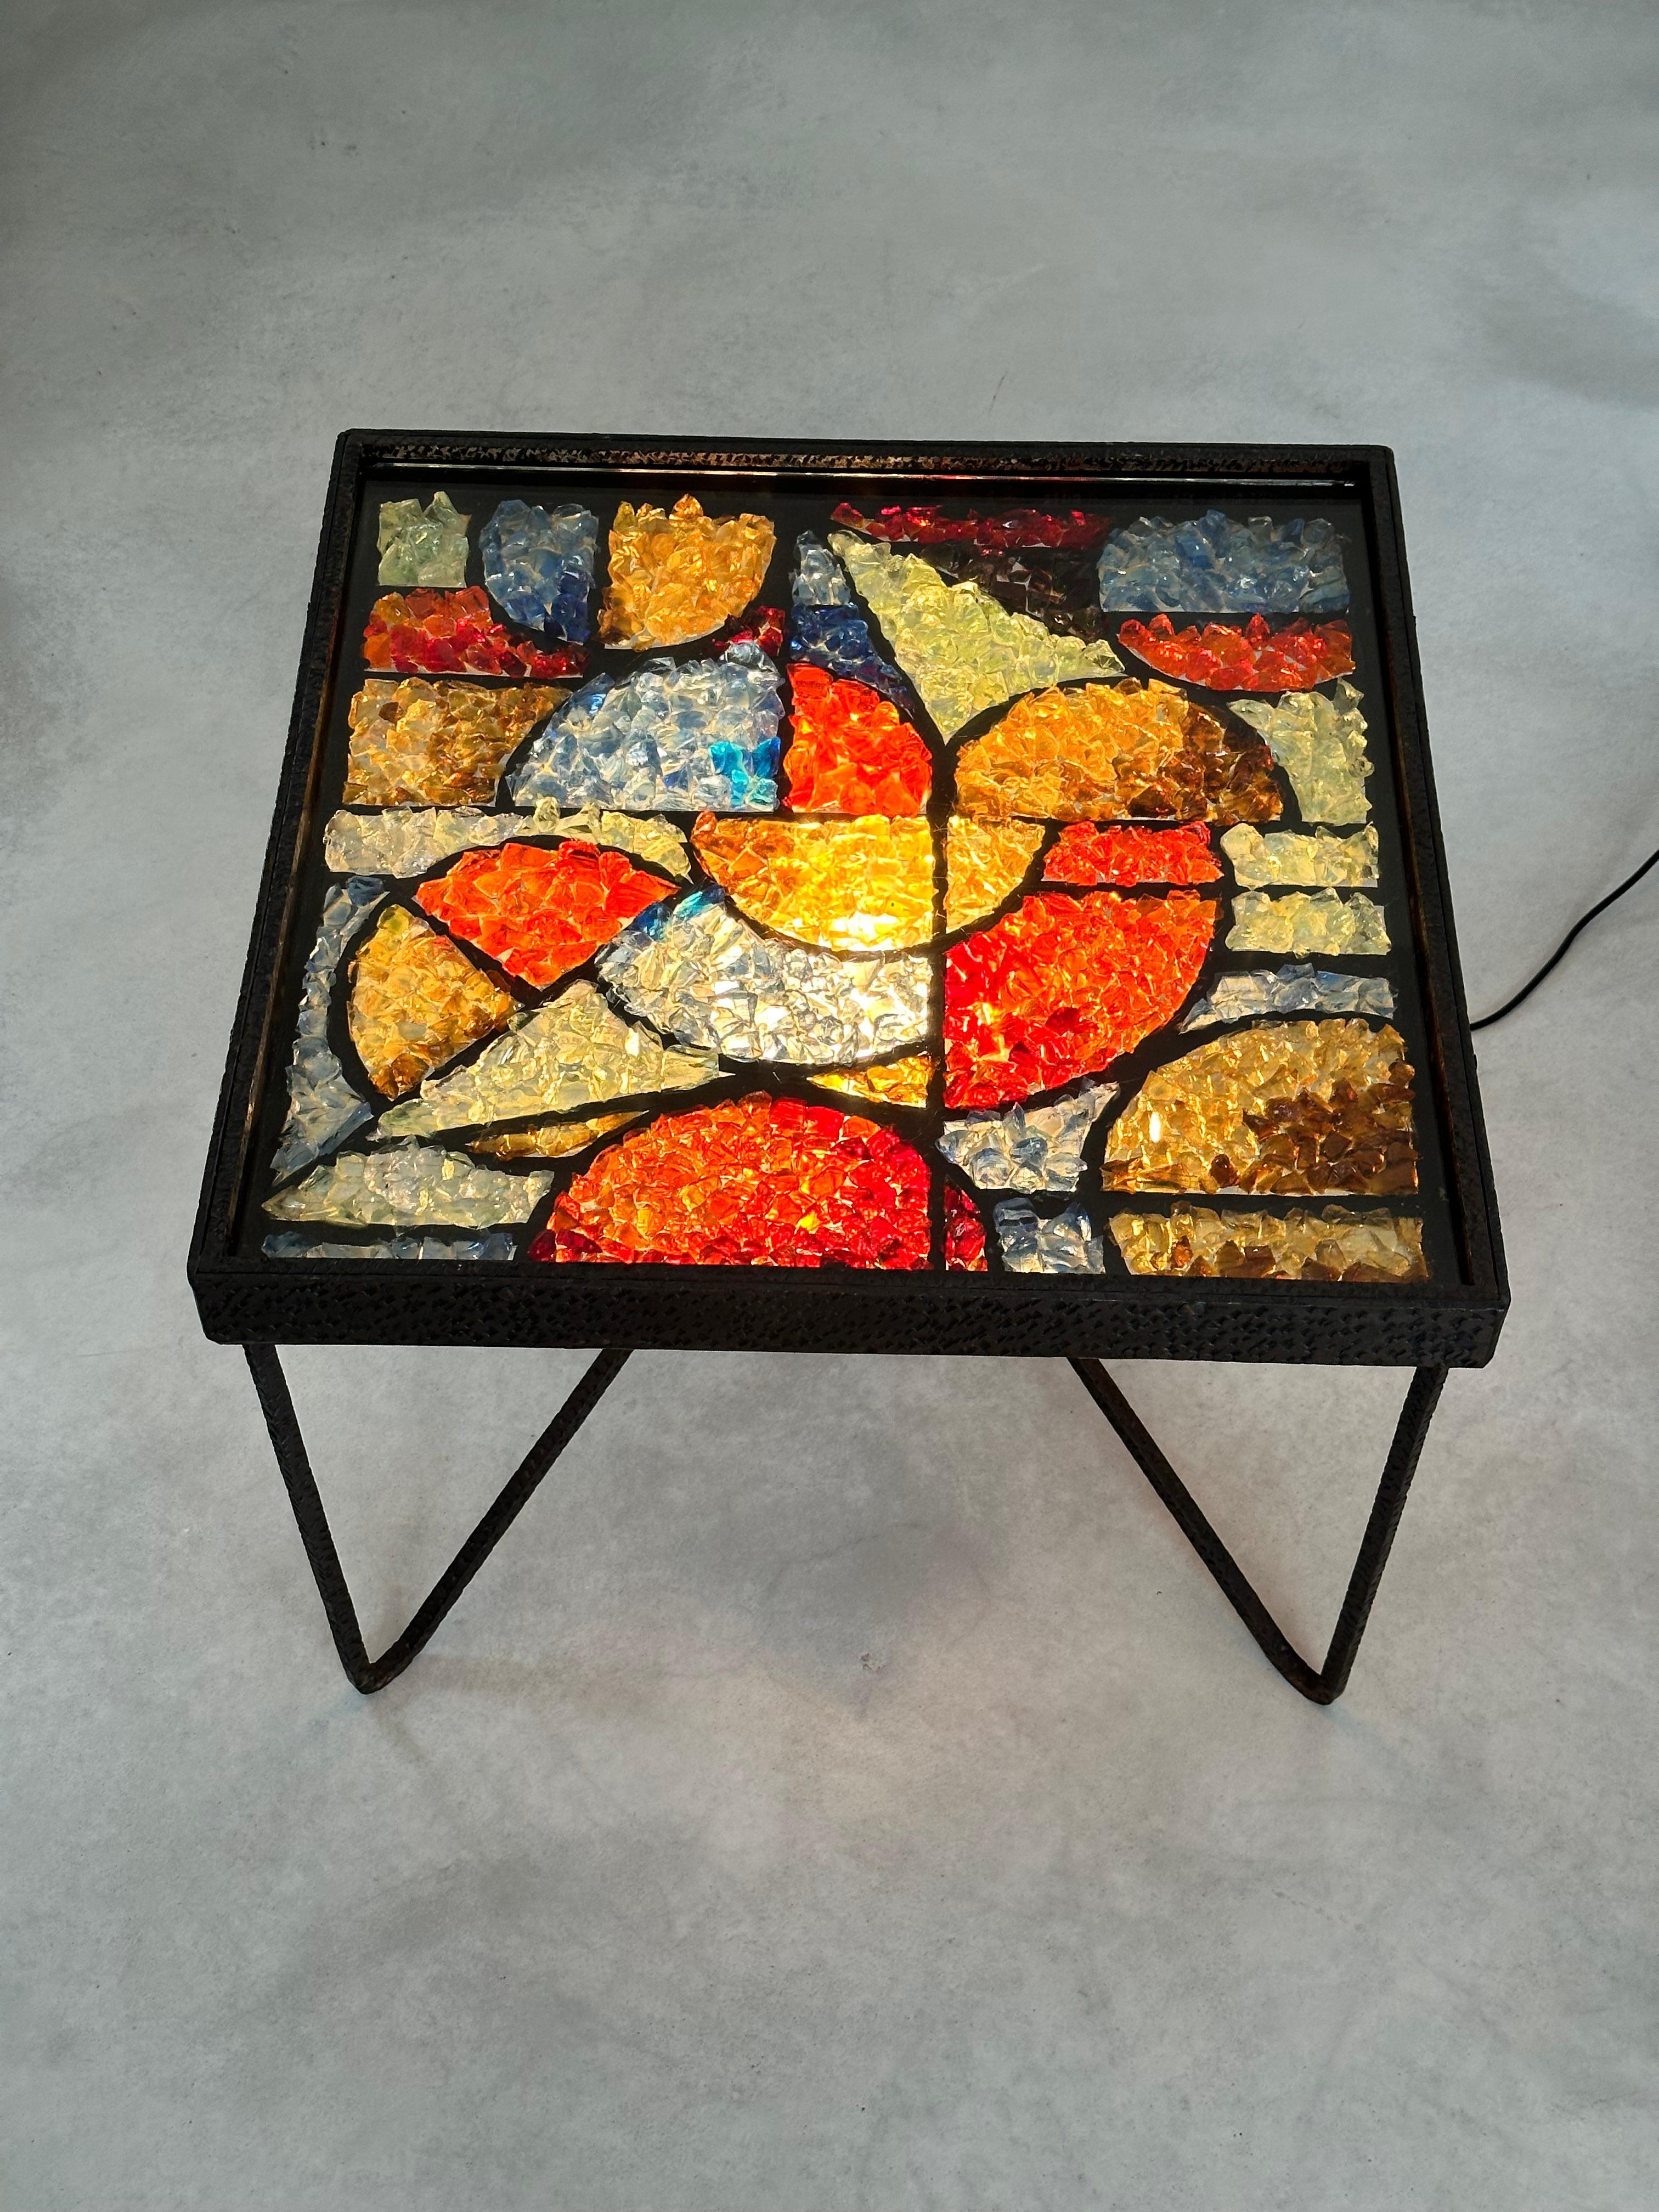 Exceptionnelle table basse lumineuse de l'architecte André Kulesza, en fer forgé martelé et cristaux de verre polychrome. 

Les fragments de cristaux de verre ont été soigneusement sélectionnés et combinés harmonieusement pour représenter un motif